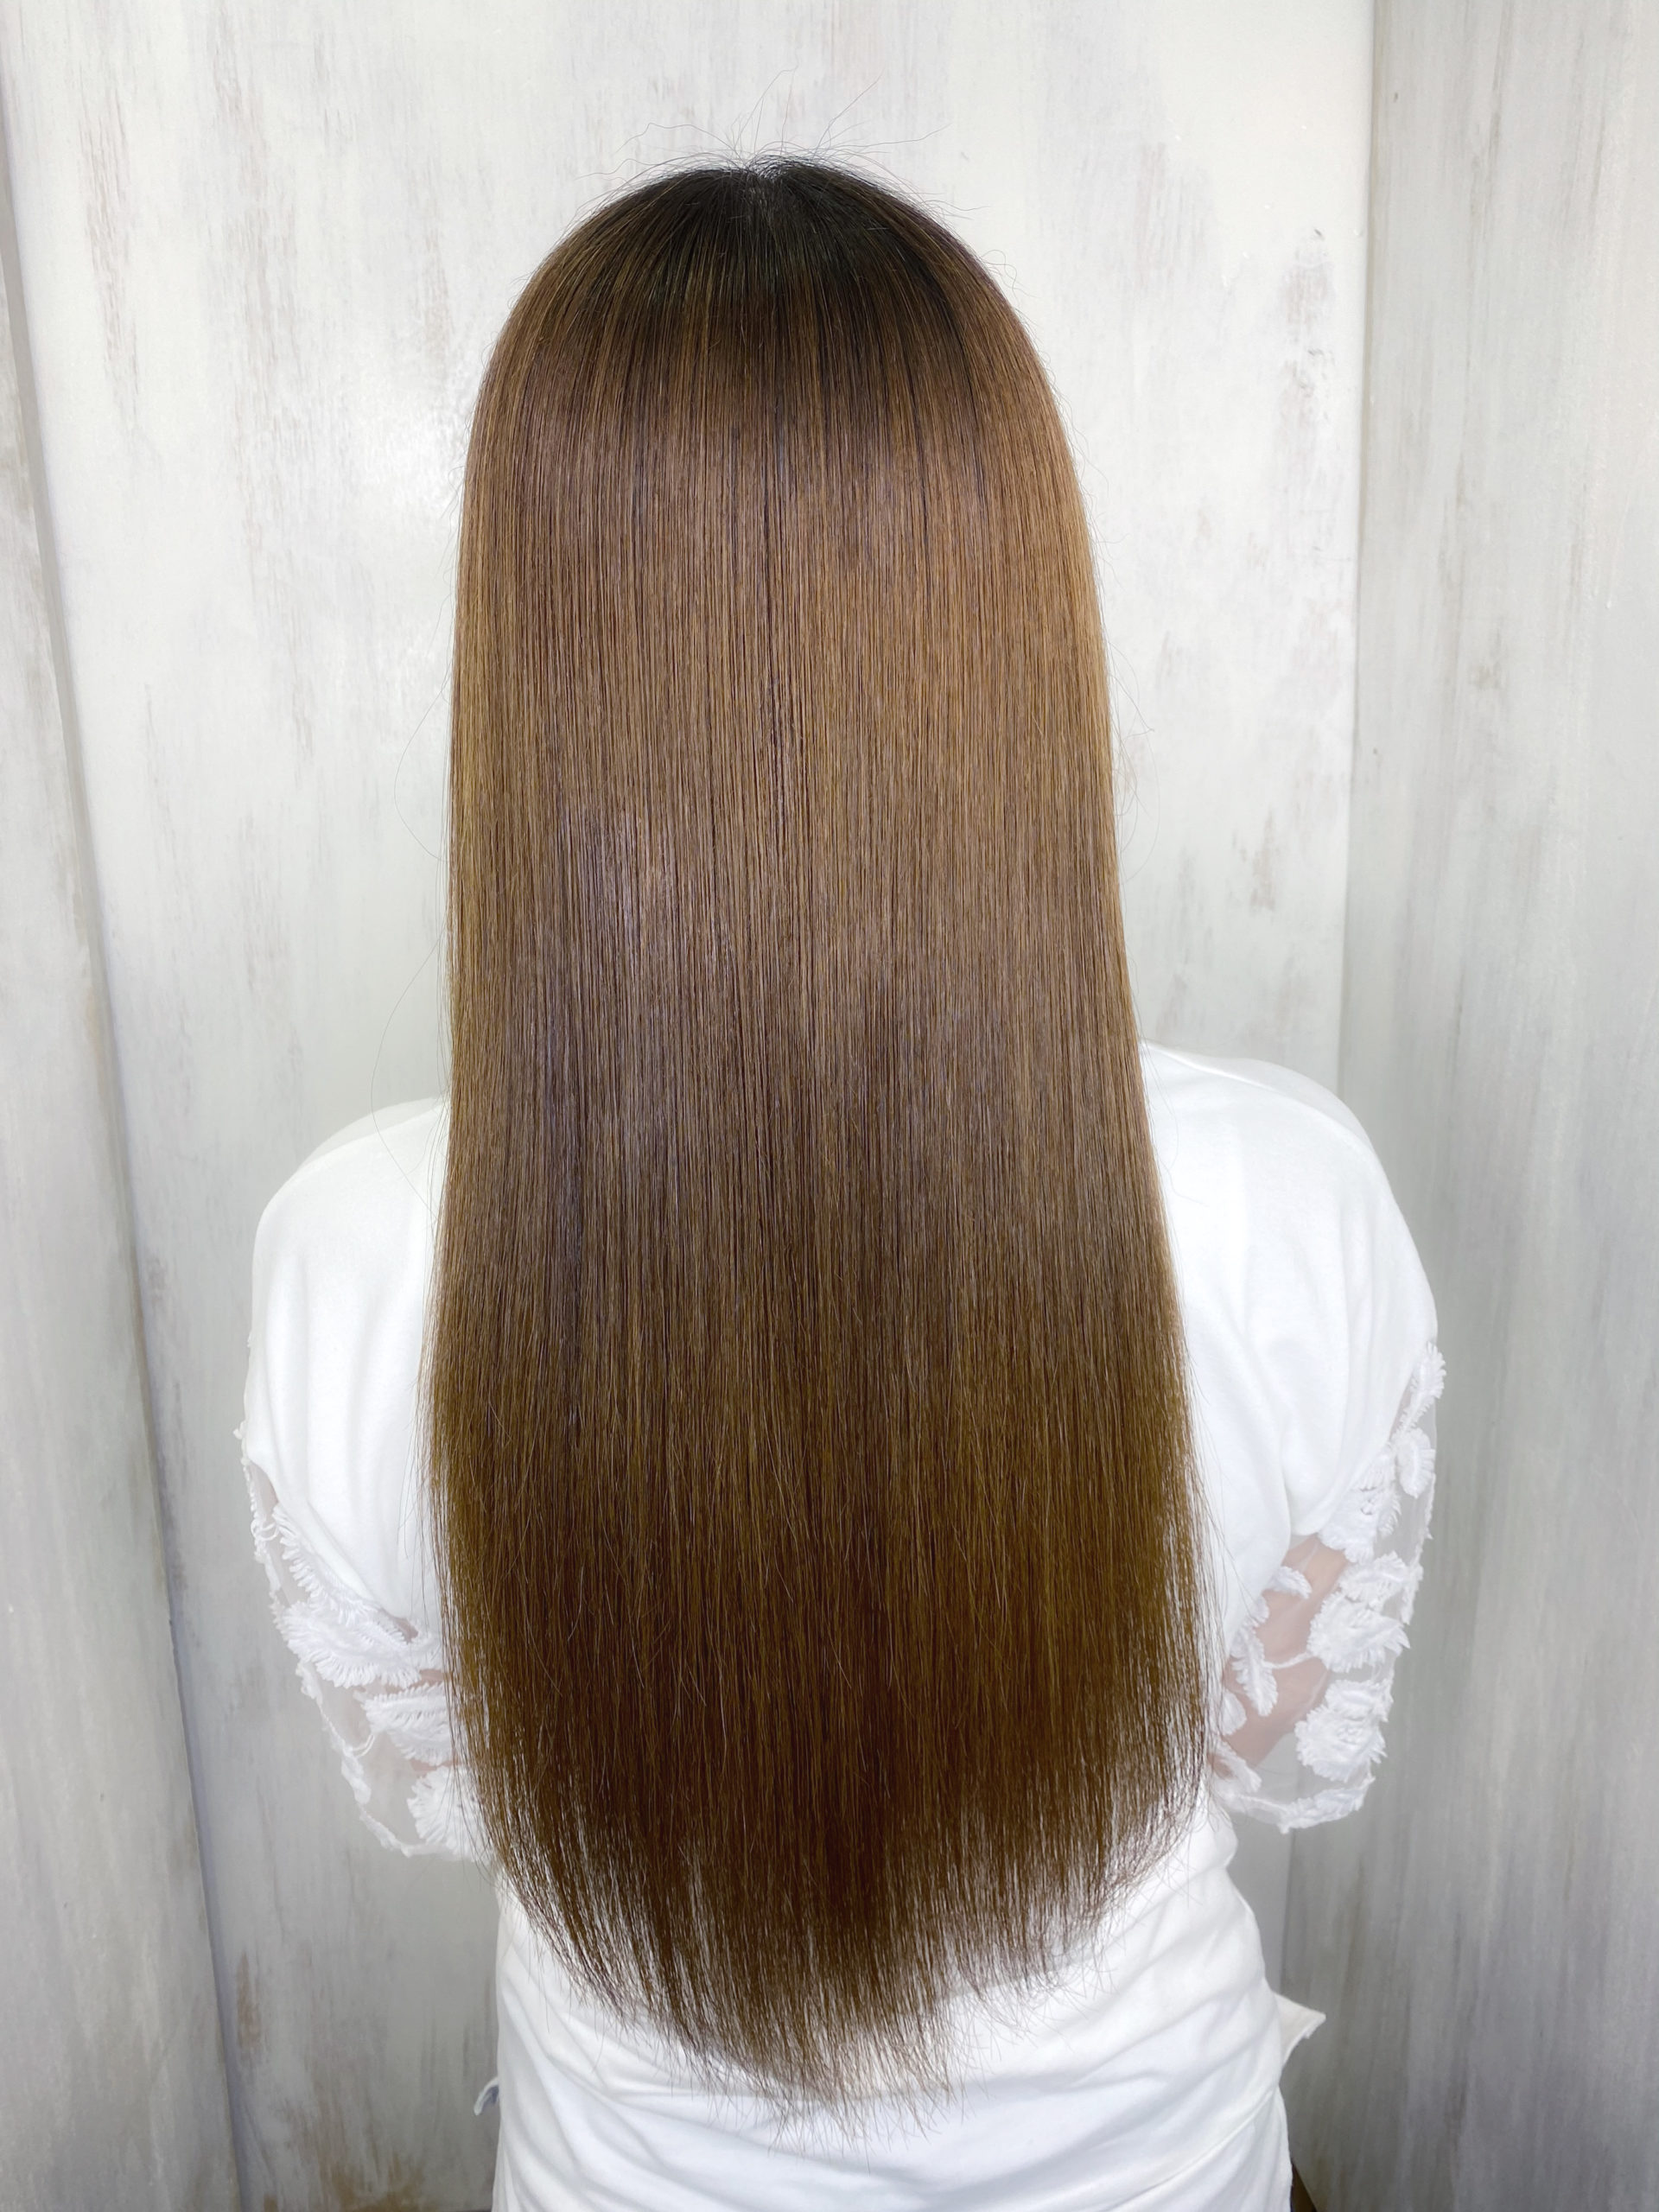 一年ぶりの縮毛矯正で艶髪ストレートヘア。原宿・表参道『髪のお悩みを解決するヘアケア美容師の挑戦』